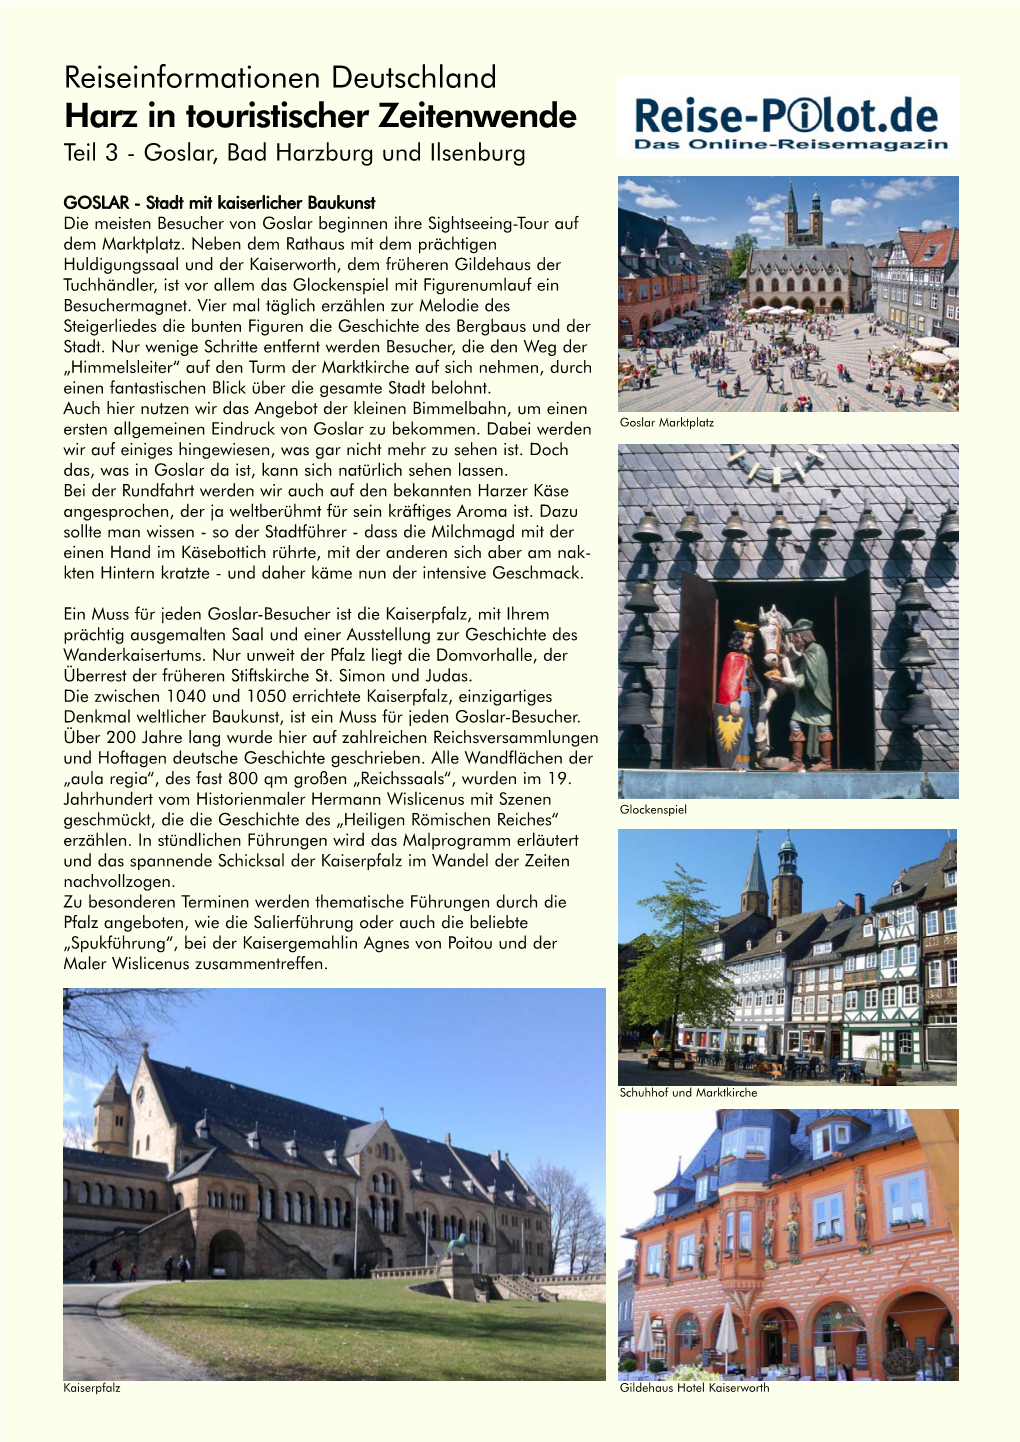 Harz in Touristischer Zeitenwende Teil 3 - Goslar, Bad Harzburg Und Ilsenburg